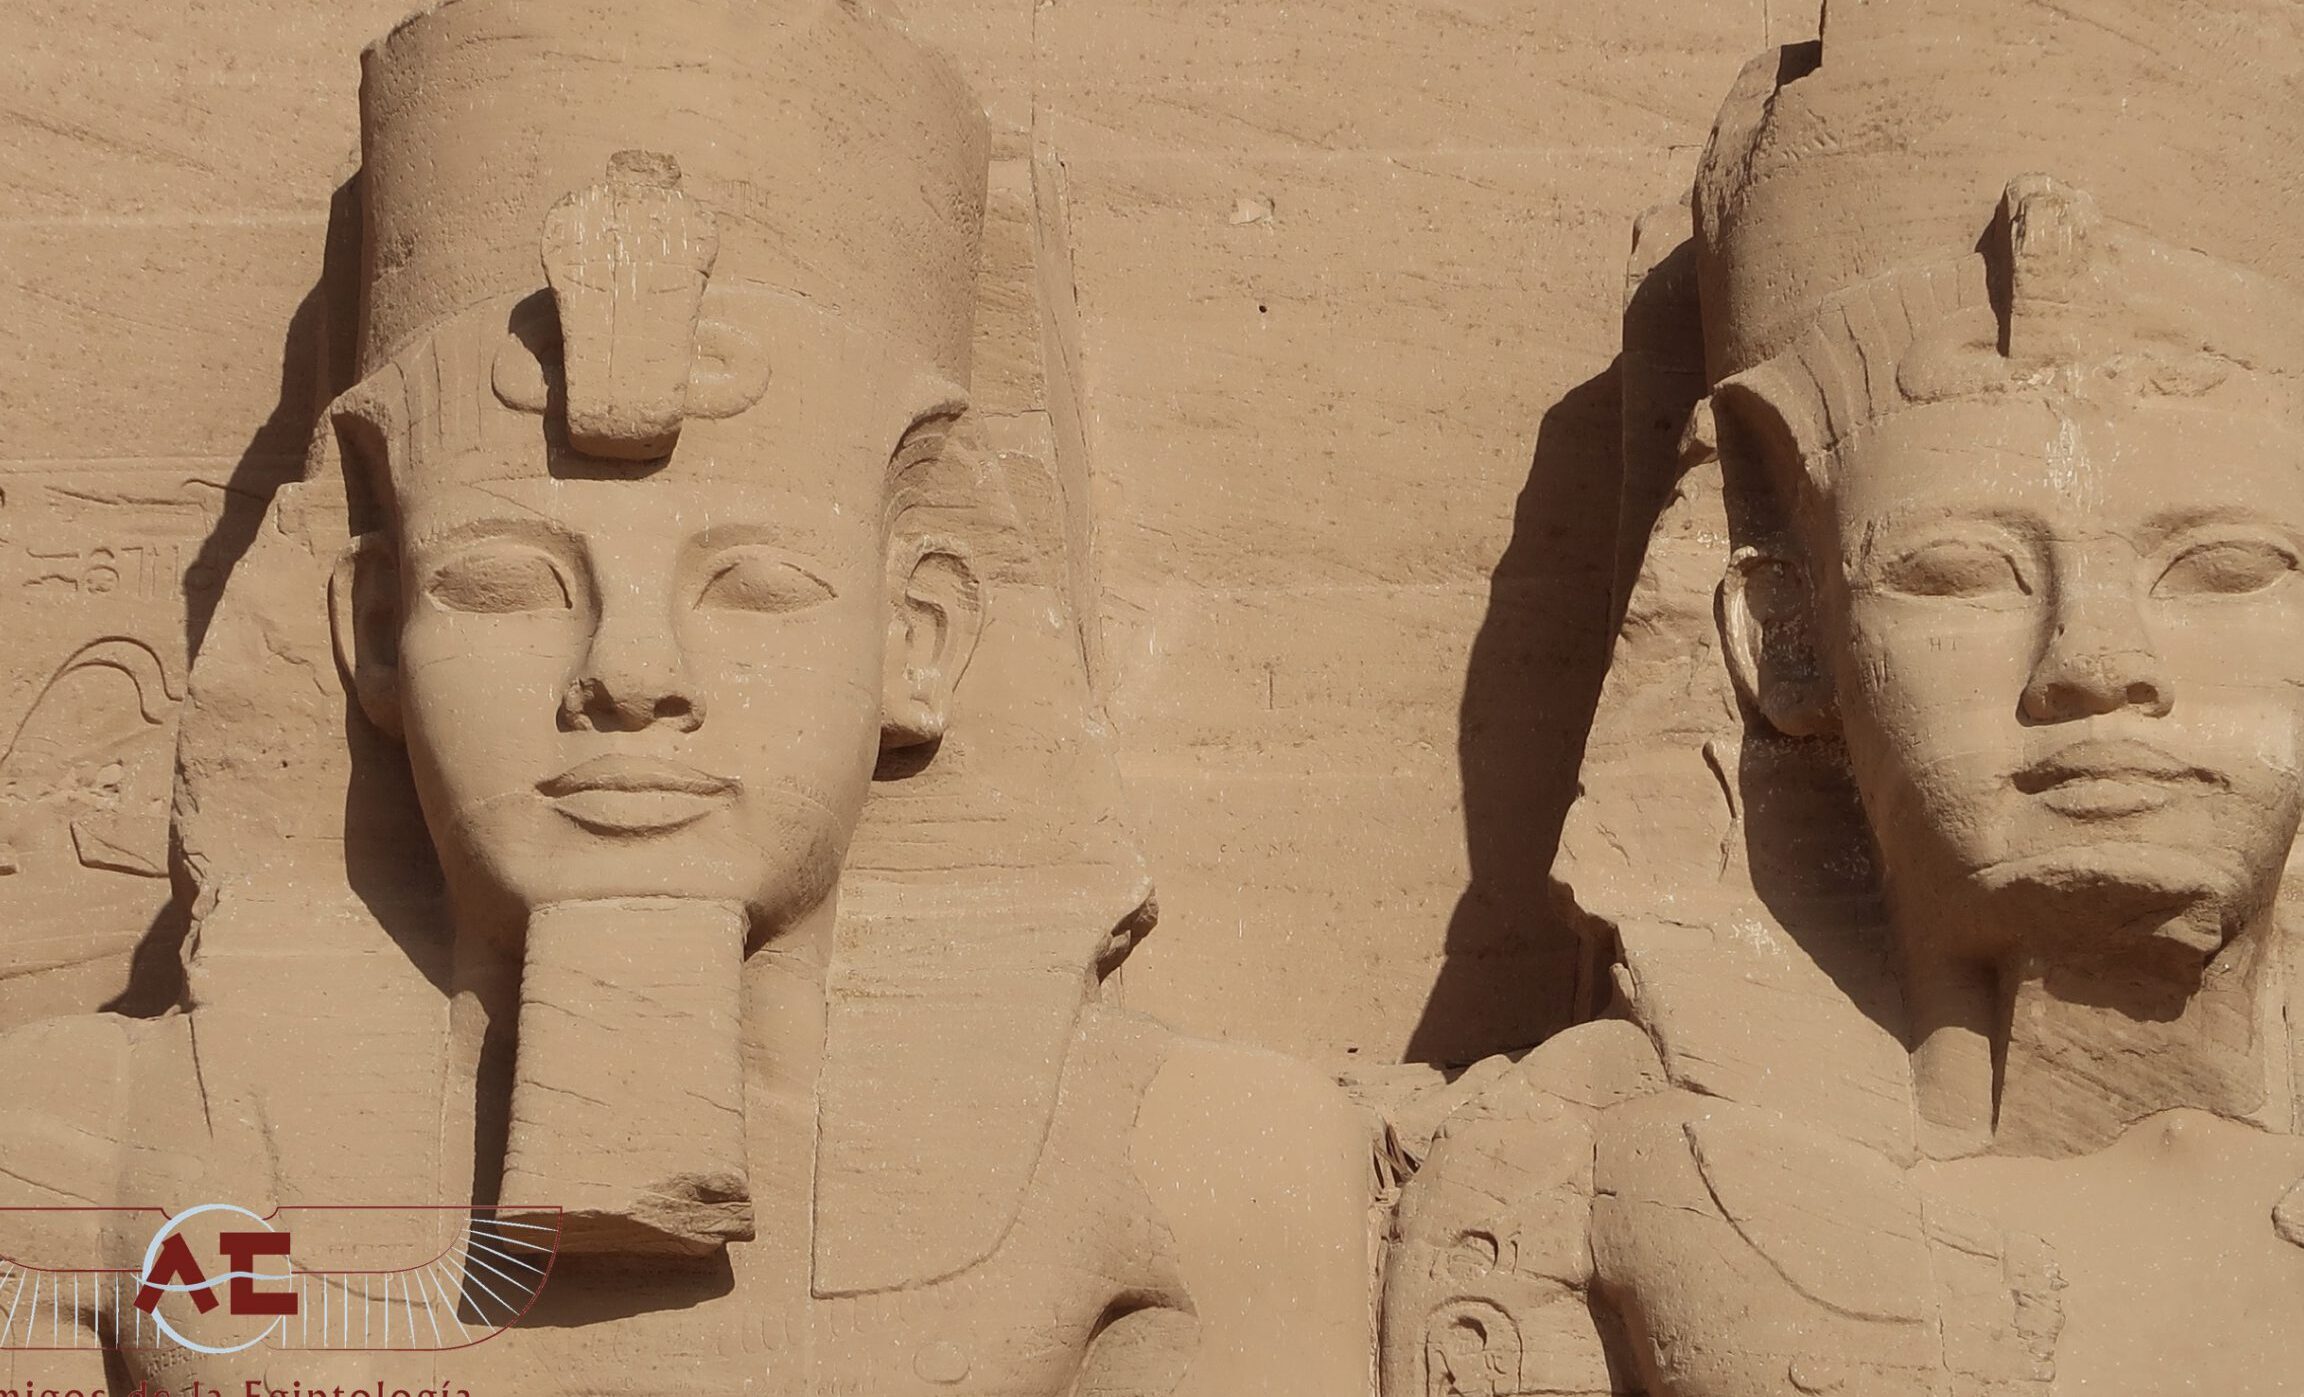 Moisés y Ramsés: La historia de dos líderes en el Antiguo Egipto